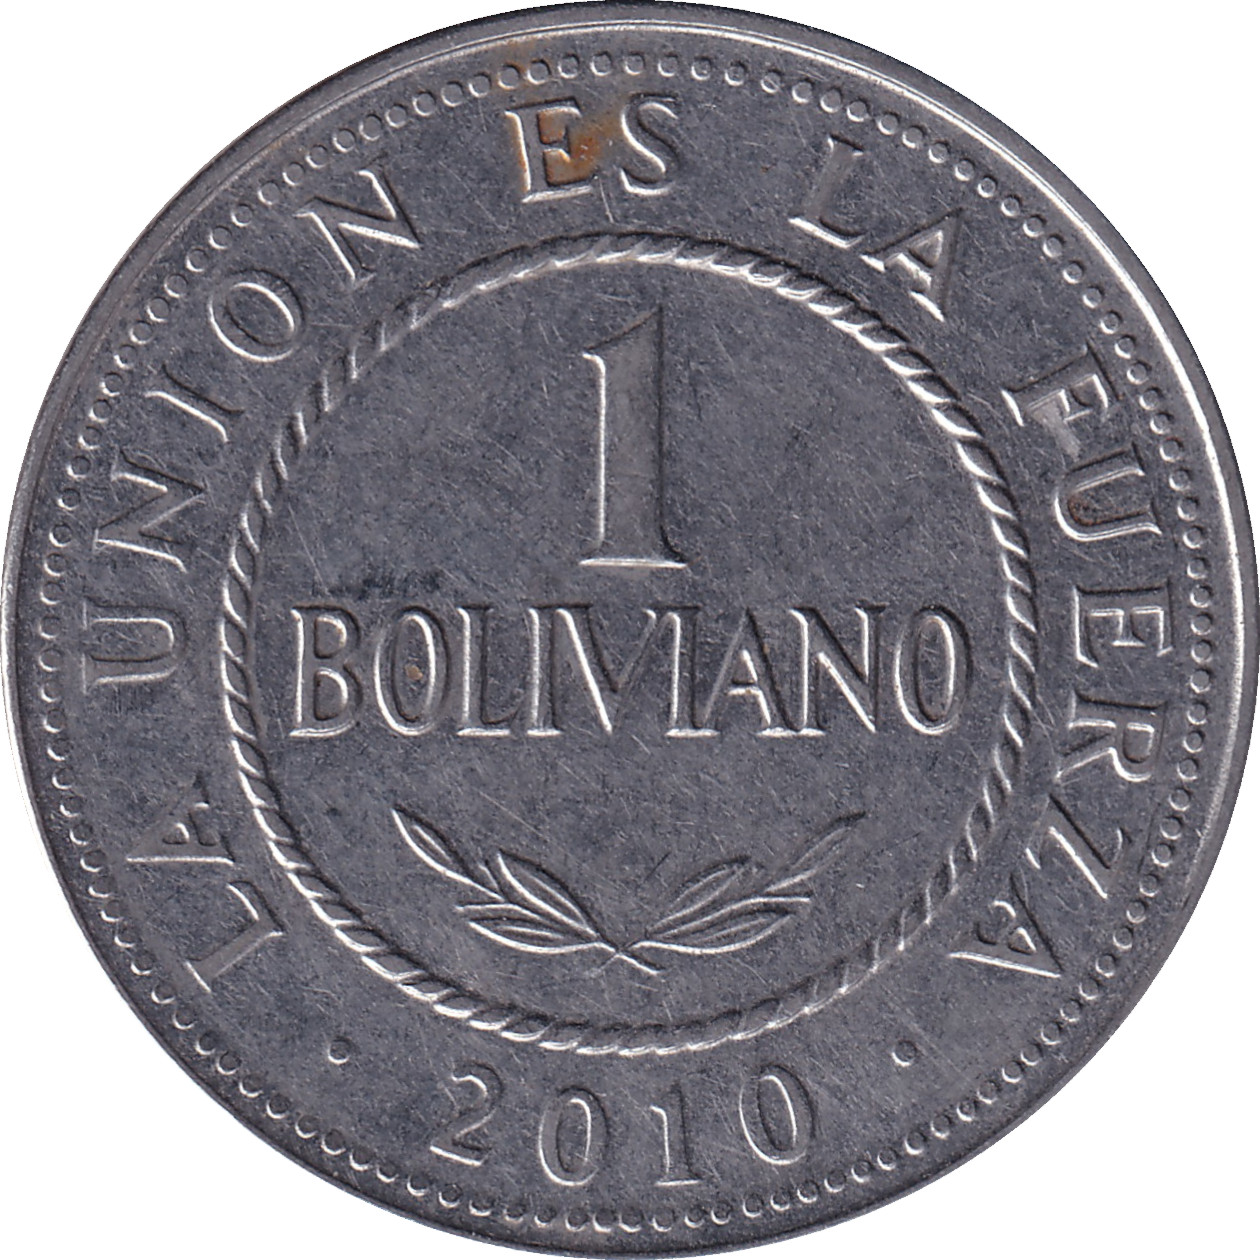 1 boliviano - État plurinational de Bolivie